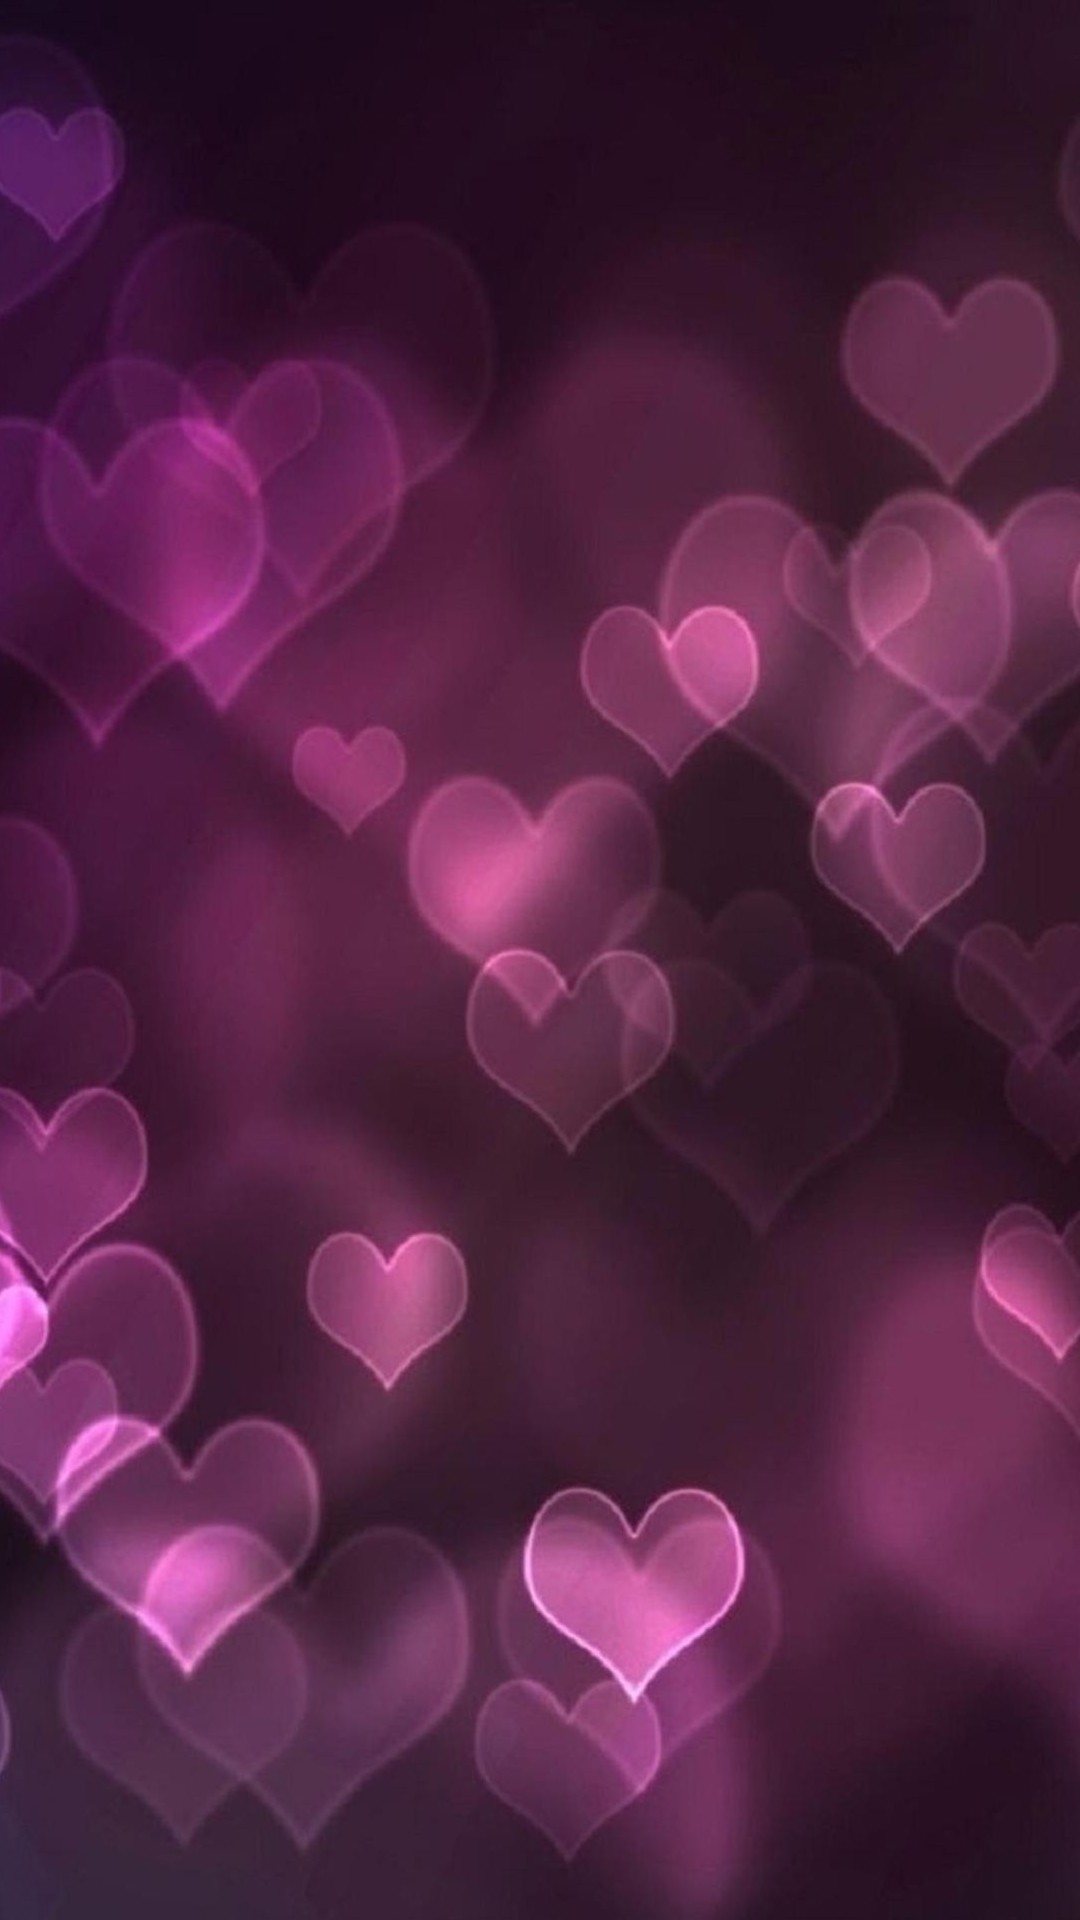 fonds d'écran rose cool,cœur,violet,violet,rose,amour